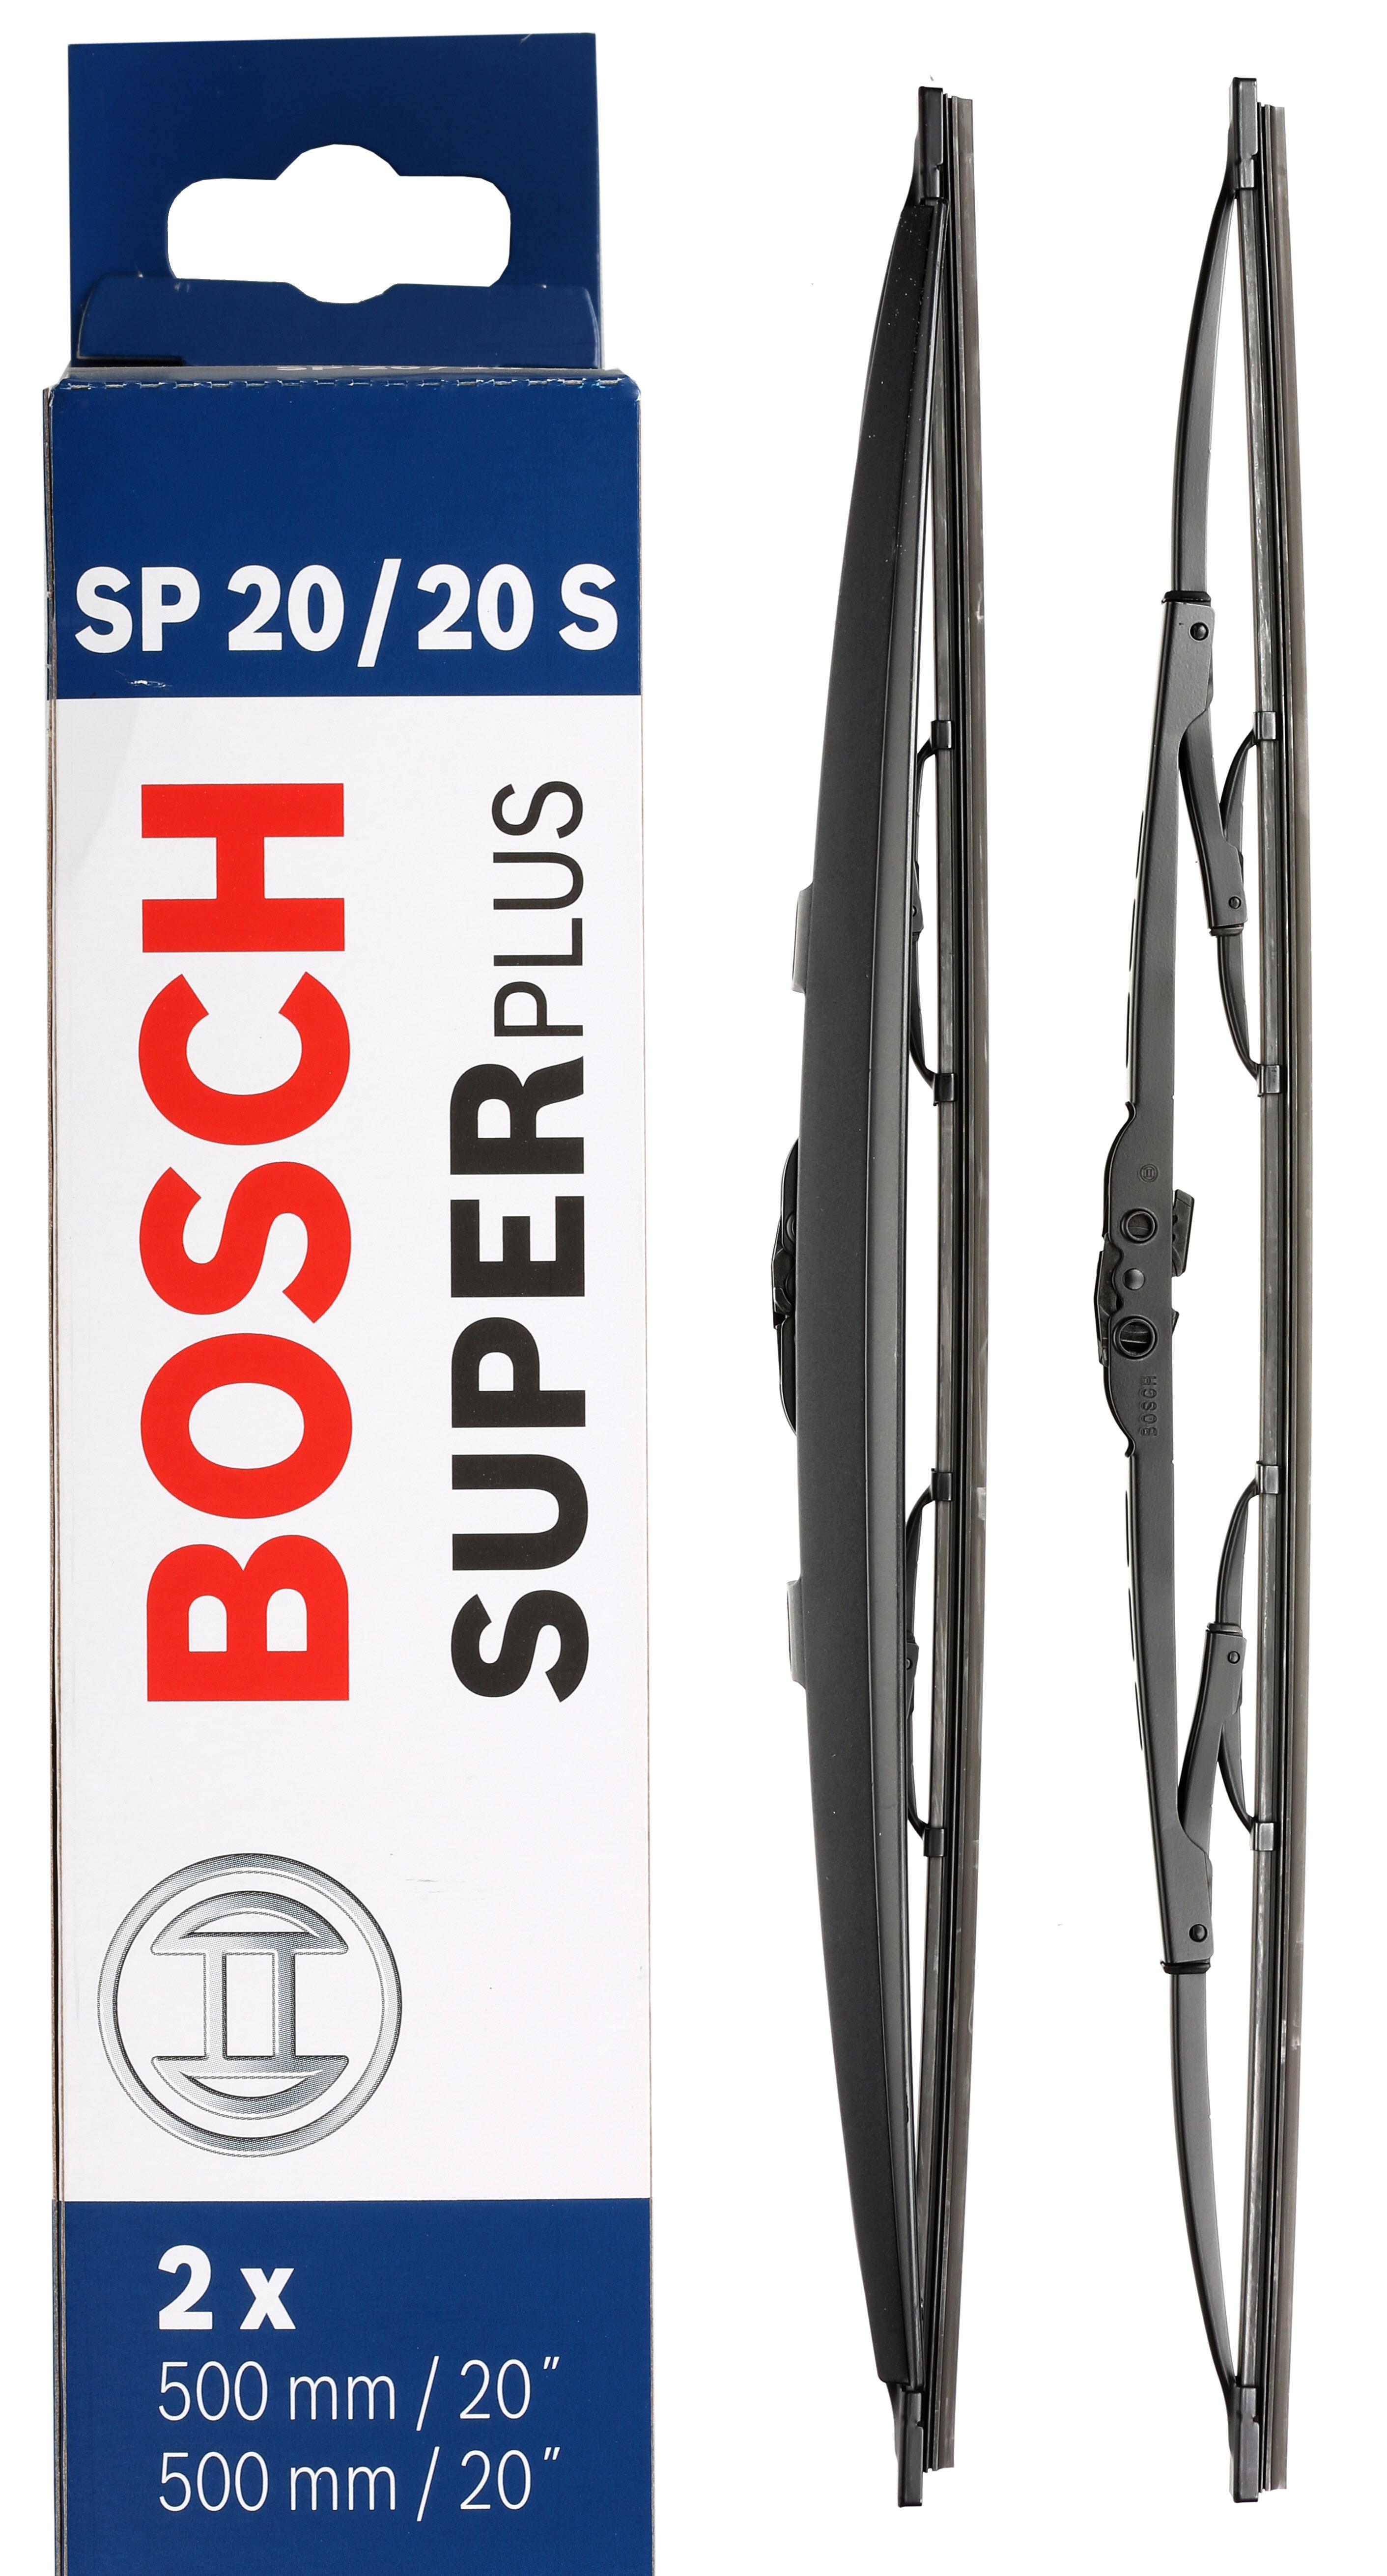 Bosch Sp20/20S Wiper Blades - Front Pair